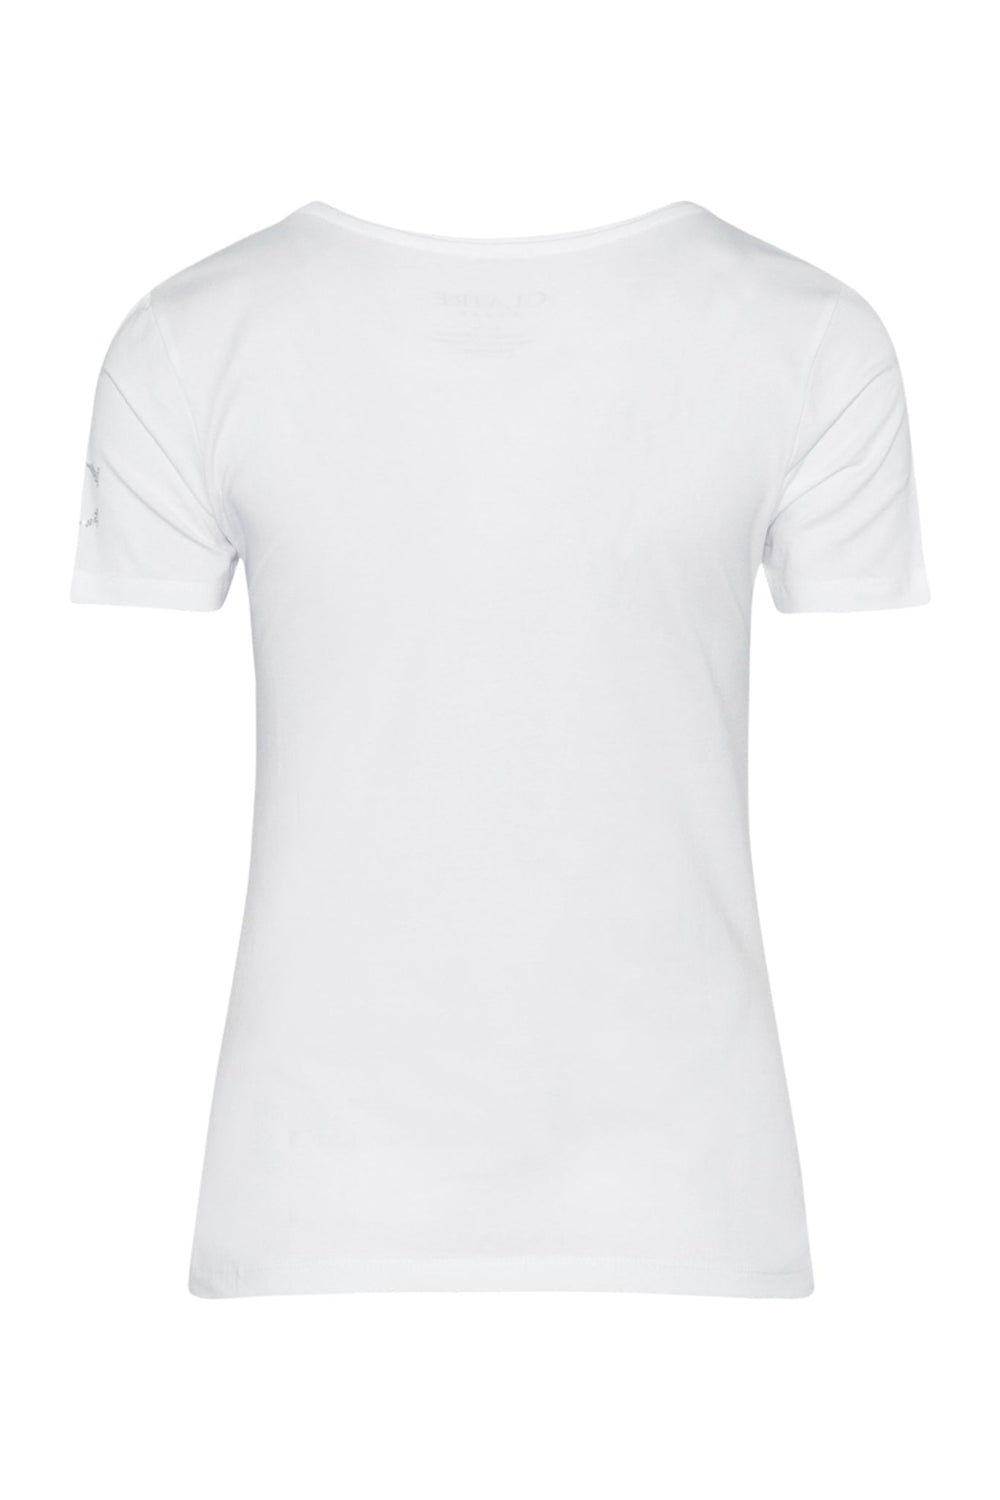 Cwaida - T-Shirt White | Skjorter og bluser | Smuk - Dameklær på nett